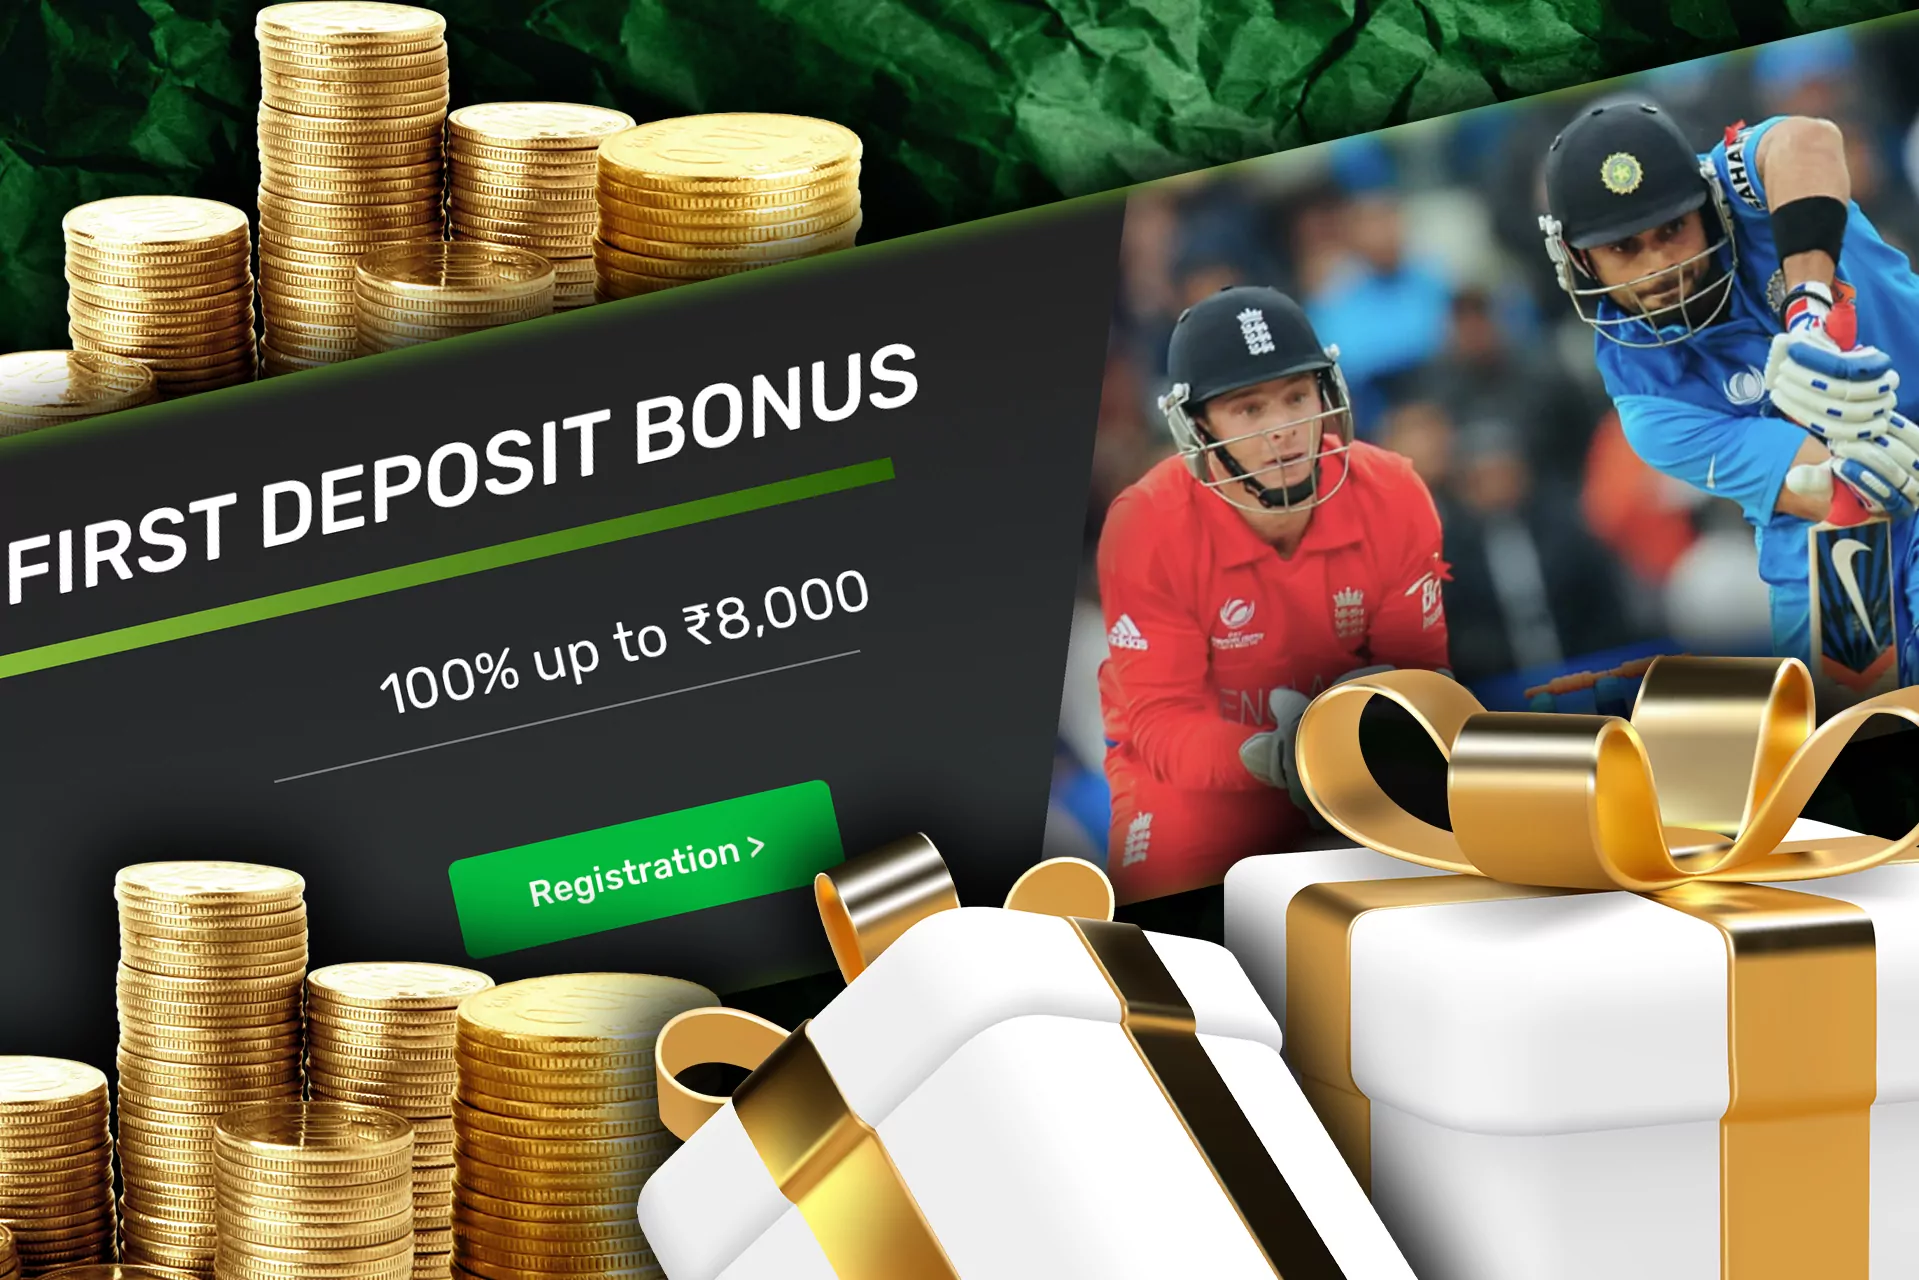 Campobet Welcome bonus is 100% on your deposit.